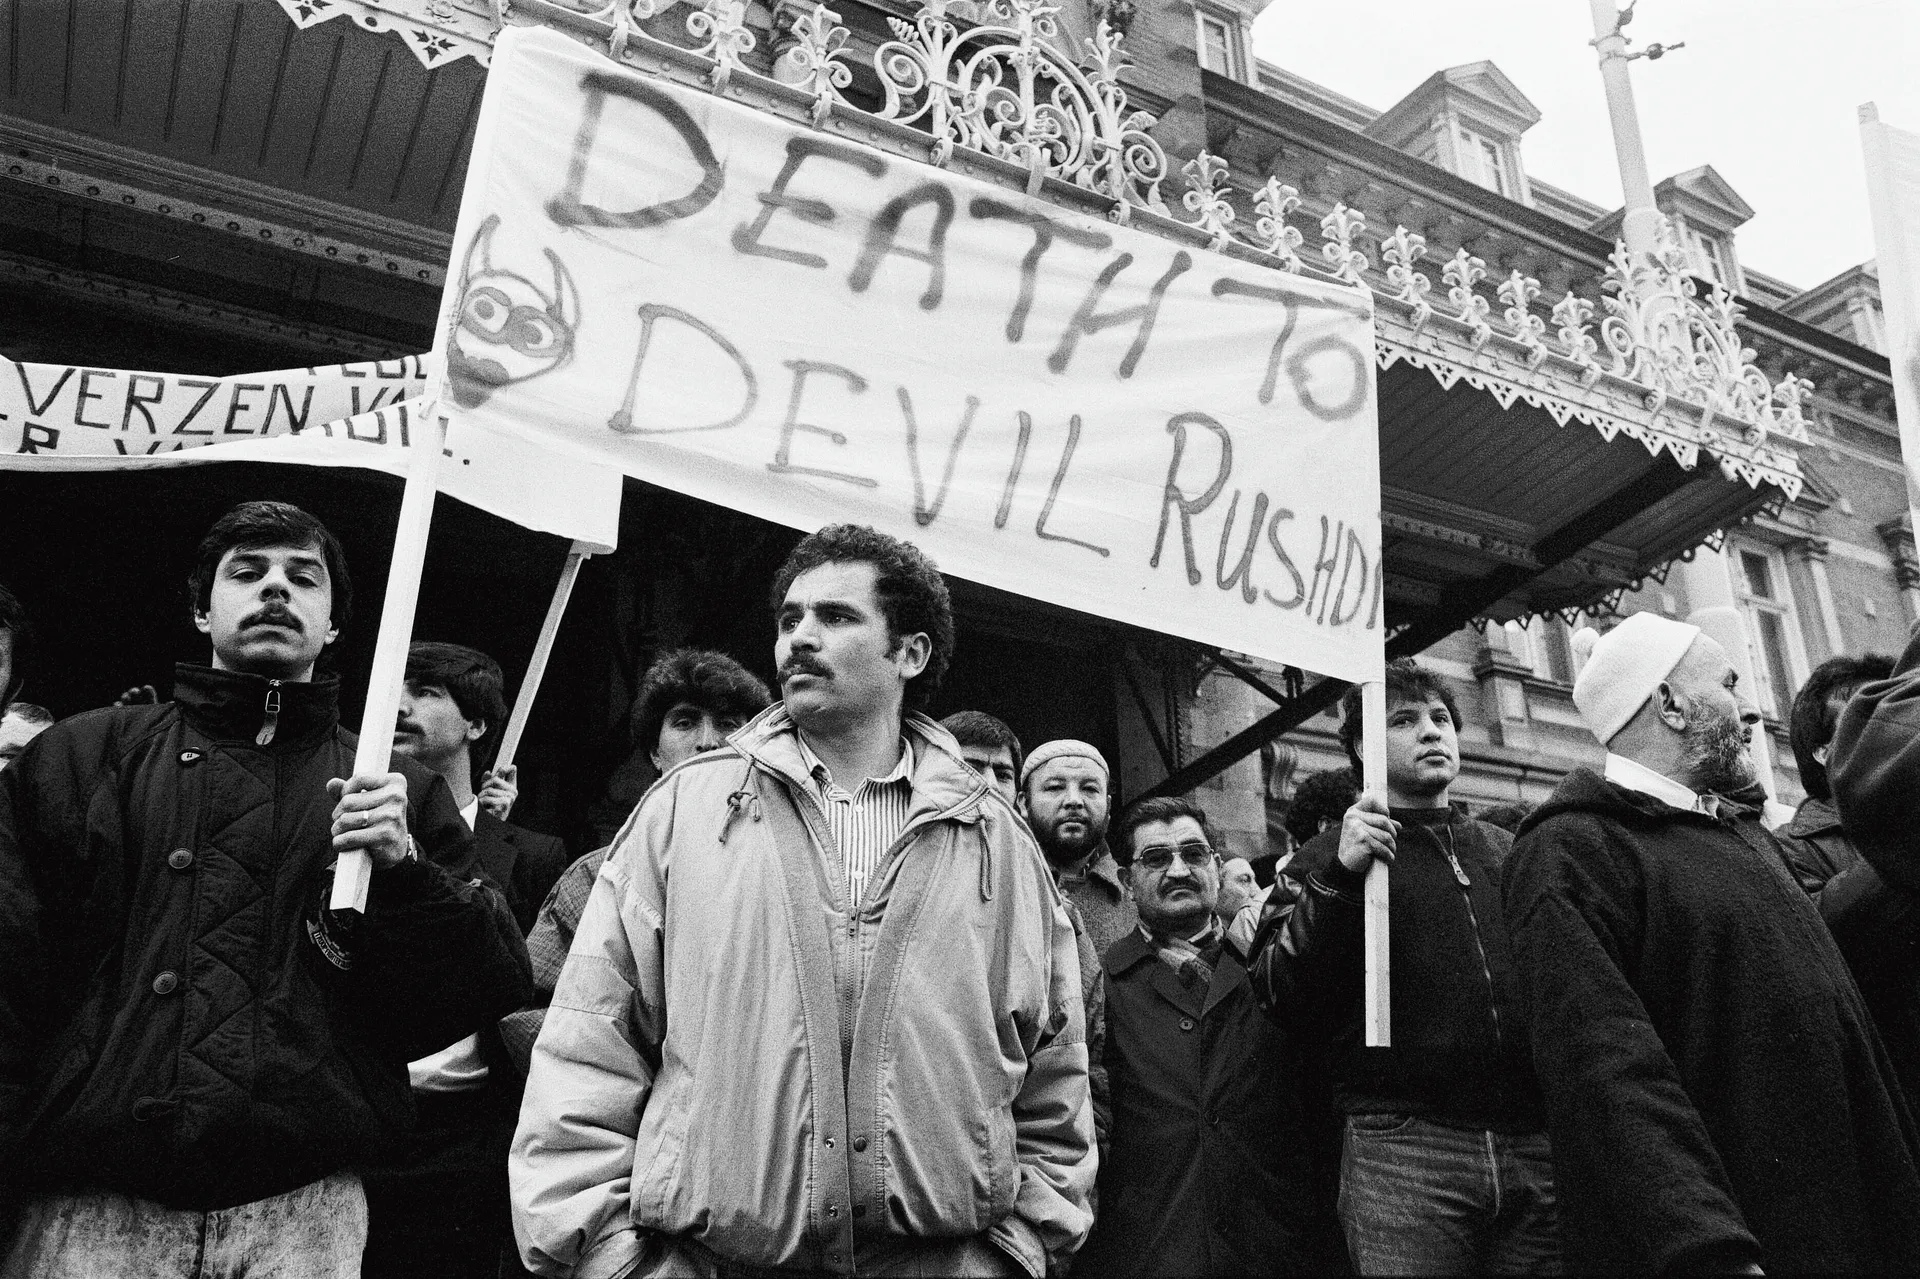 Foto van protest tegen Rushdie